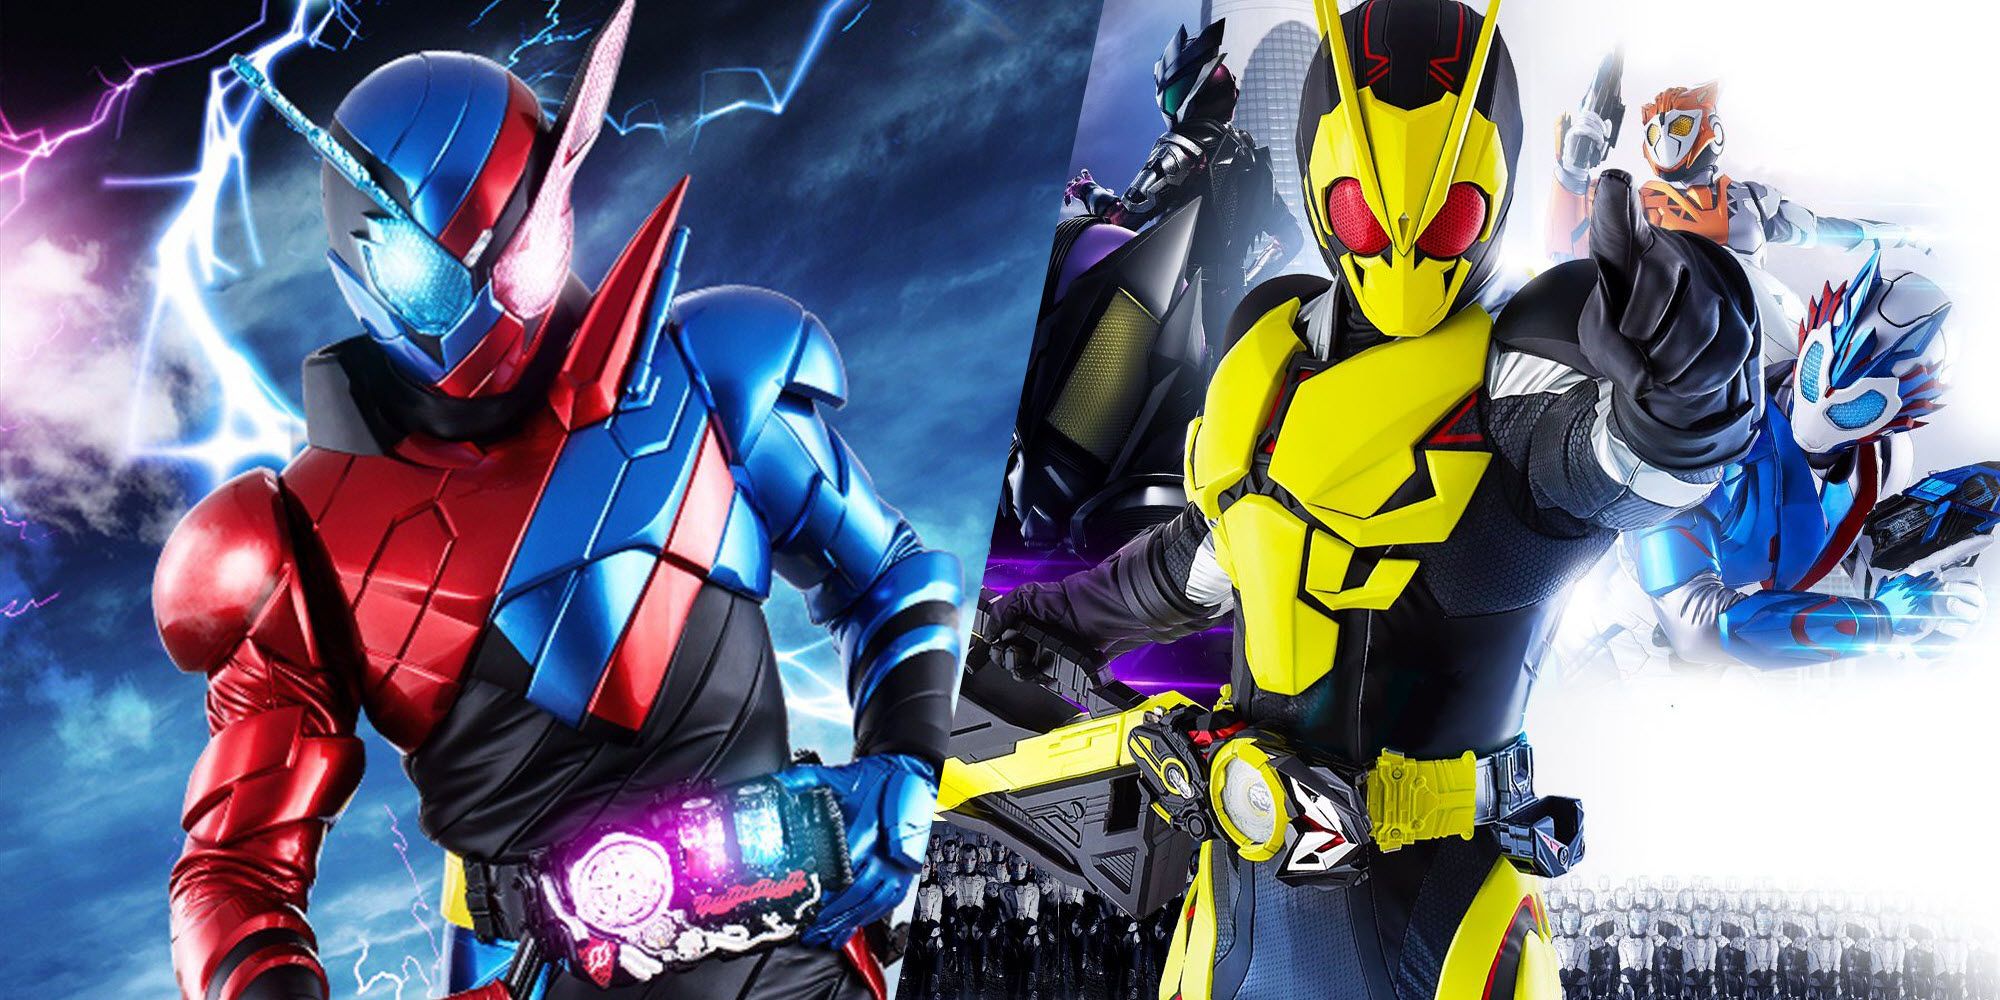 A split image features different Kamen Rider suits